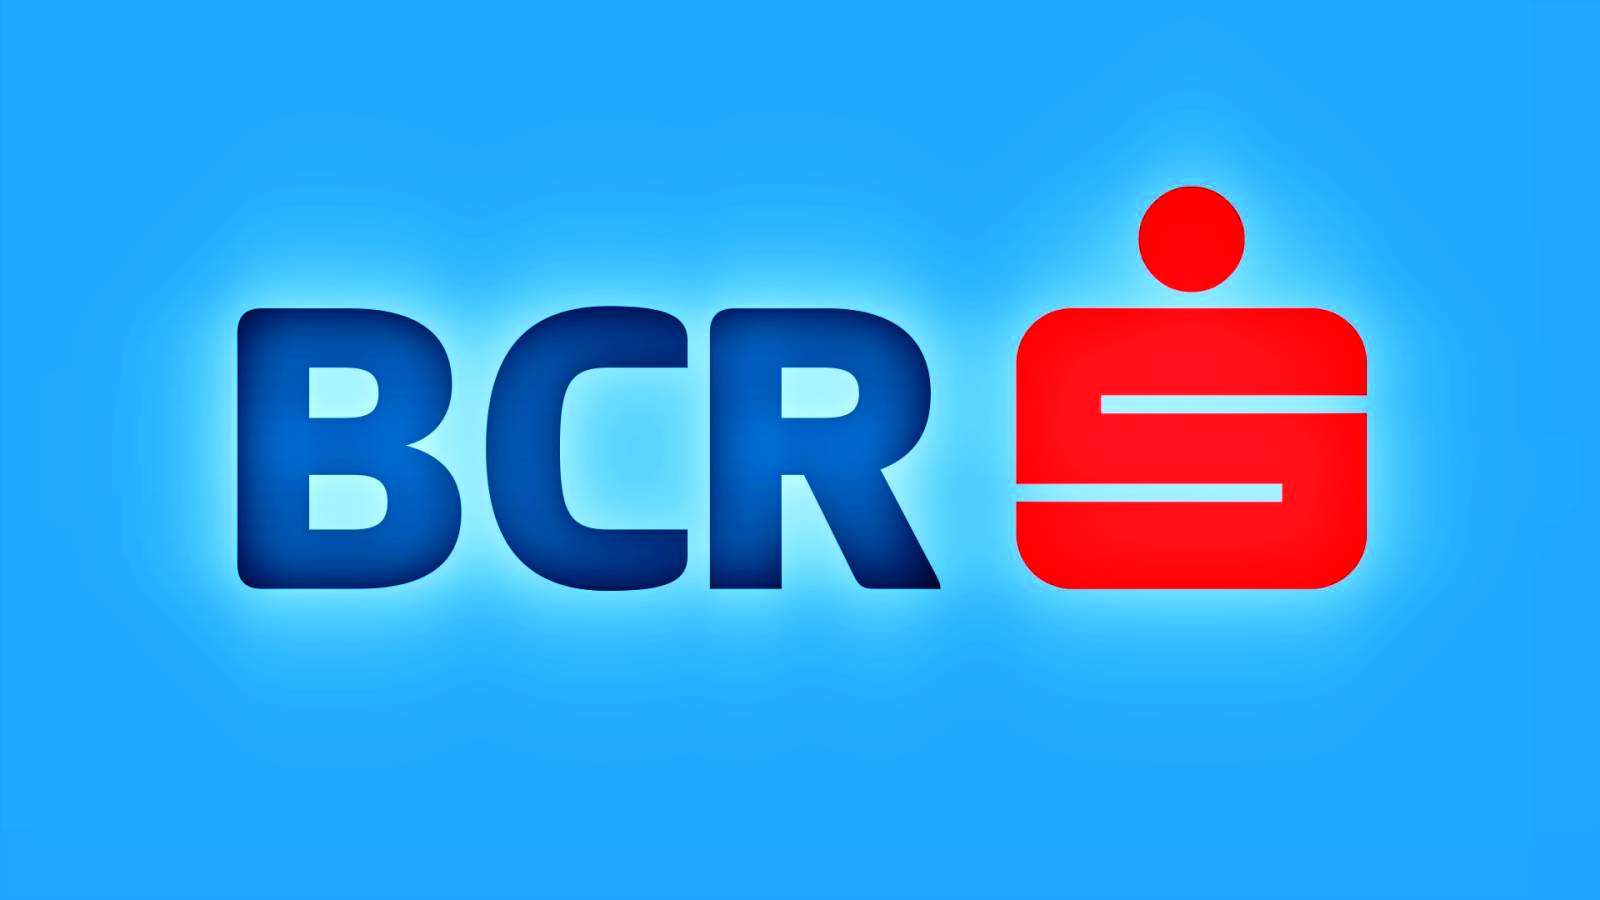 BCR Roemenië waarschuwt DNSC voor nieuwe cyberaanval